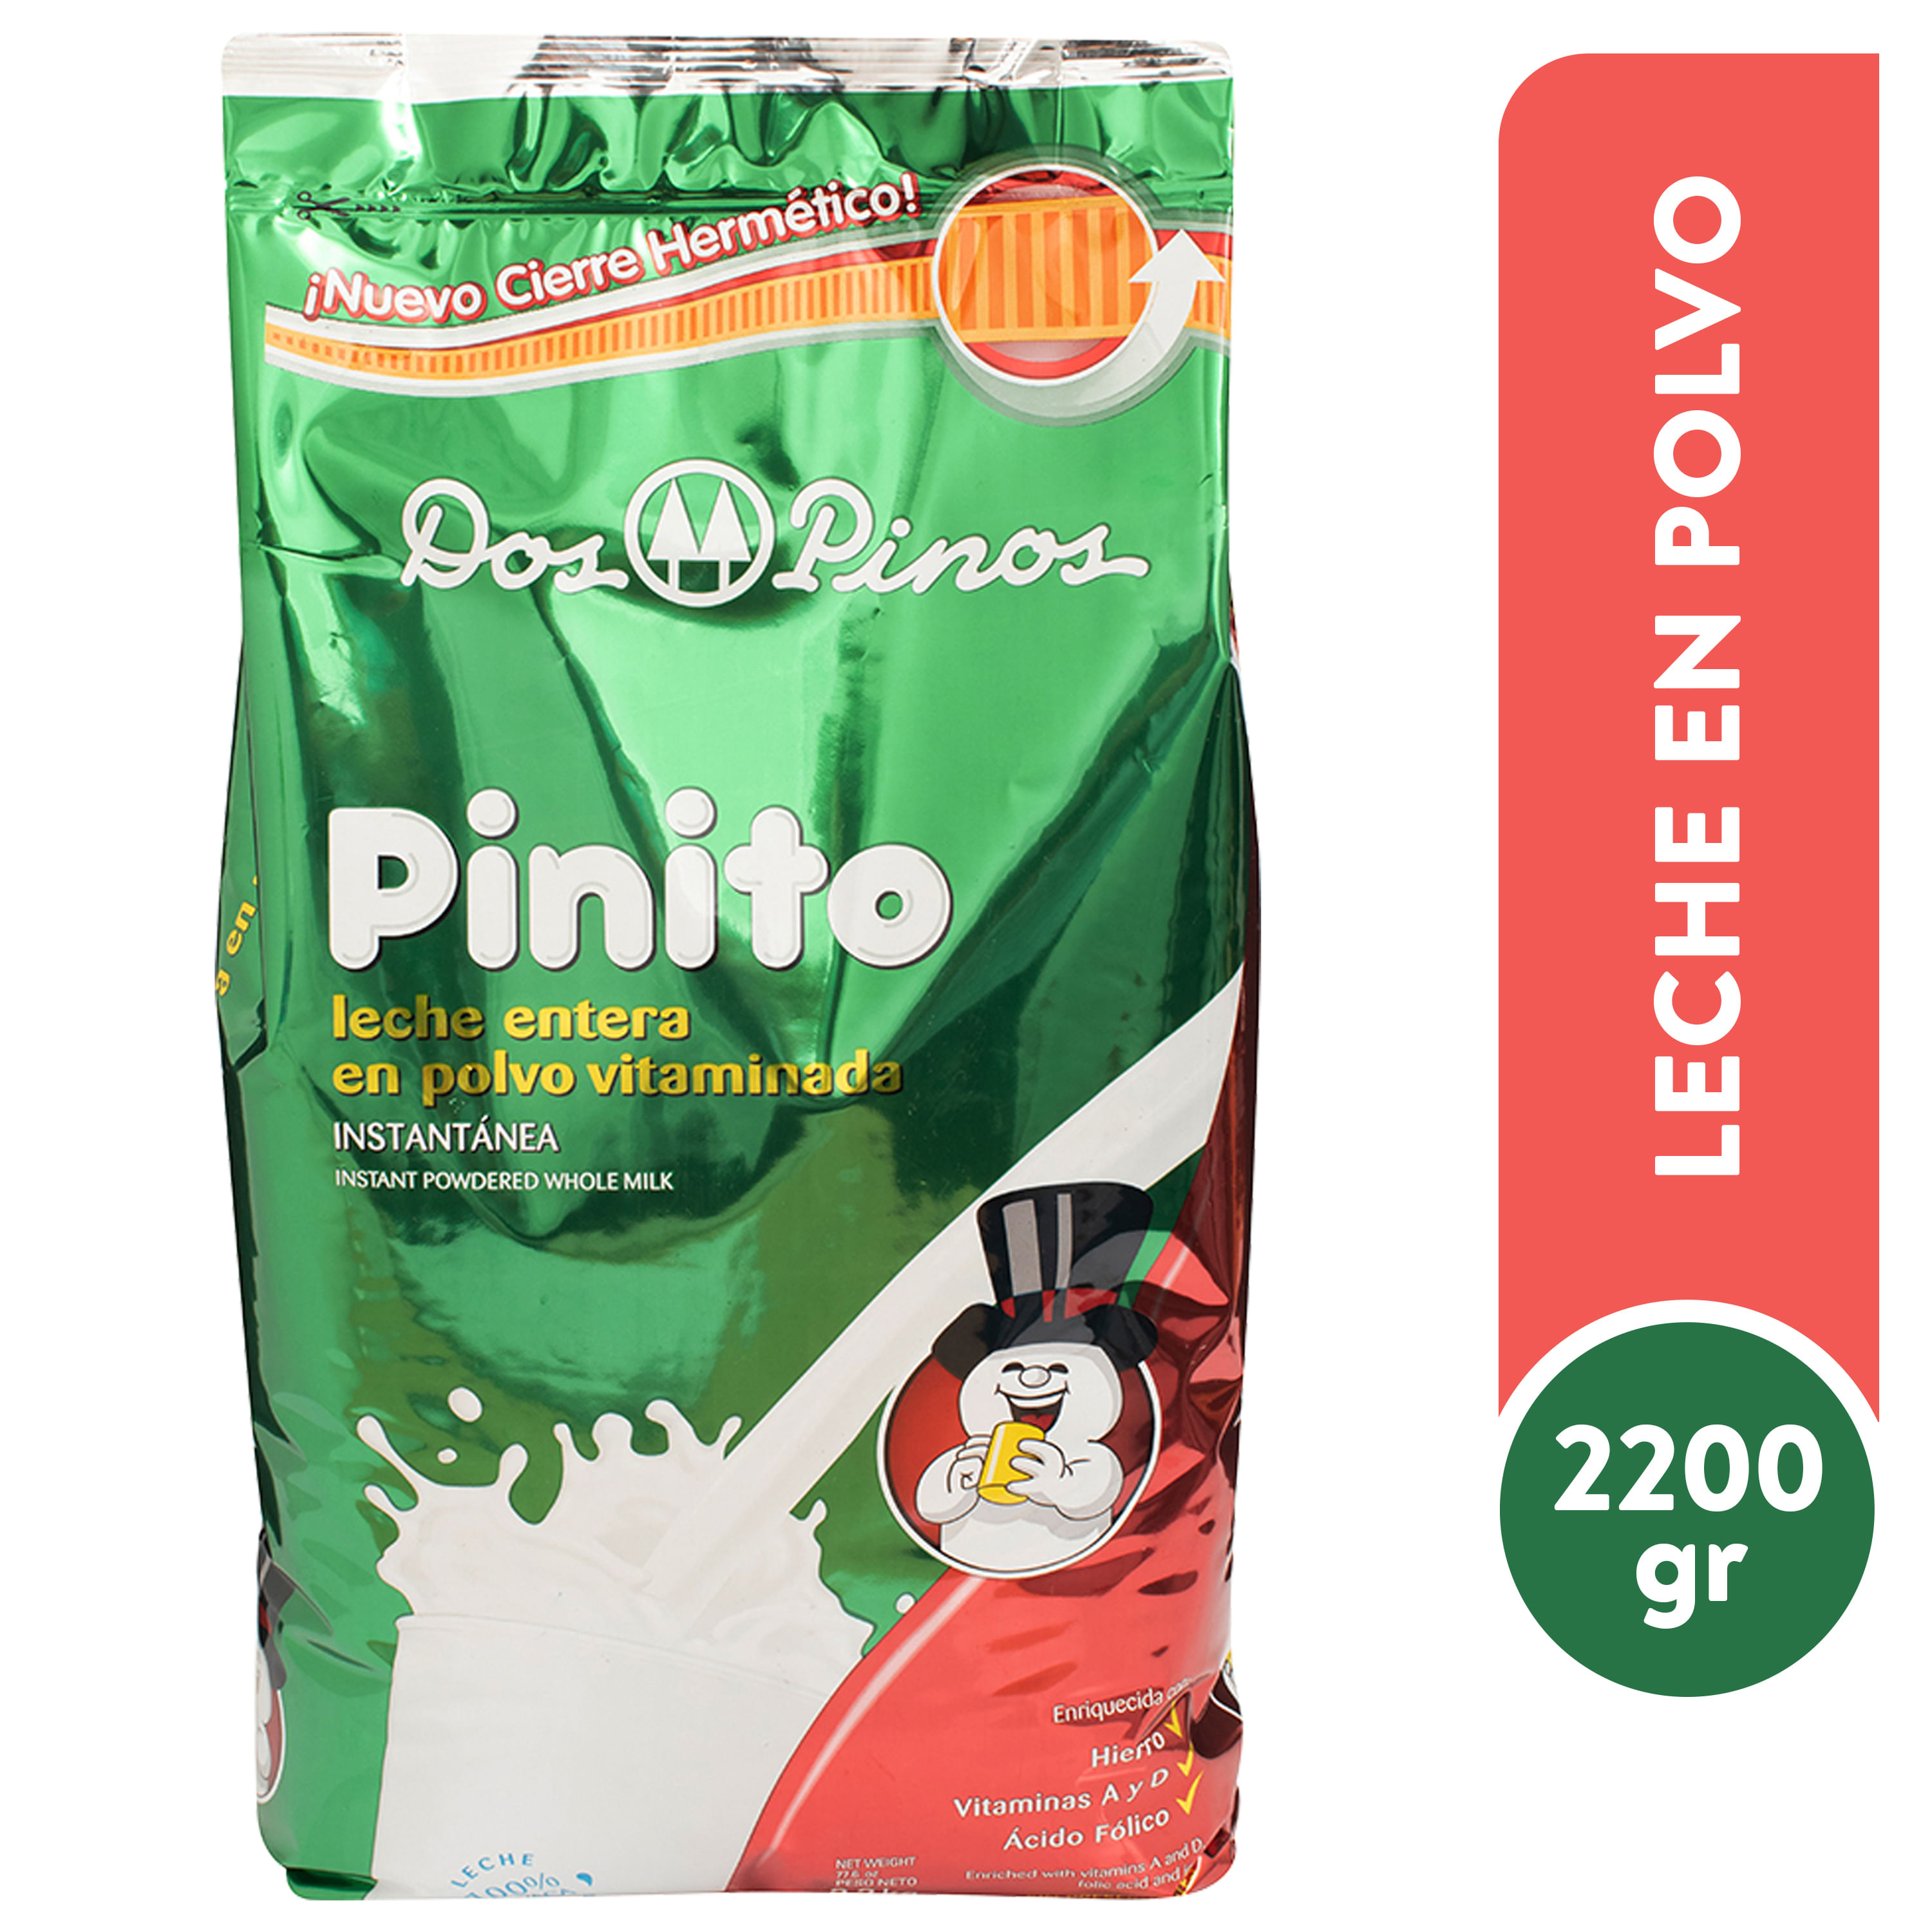 Leche-Dos-Pinos-Pinito-En-Polvo-Vitaminada-Bolsa-2200-gr-1-10212